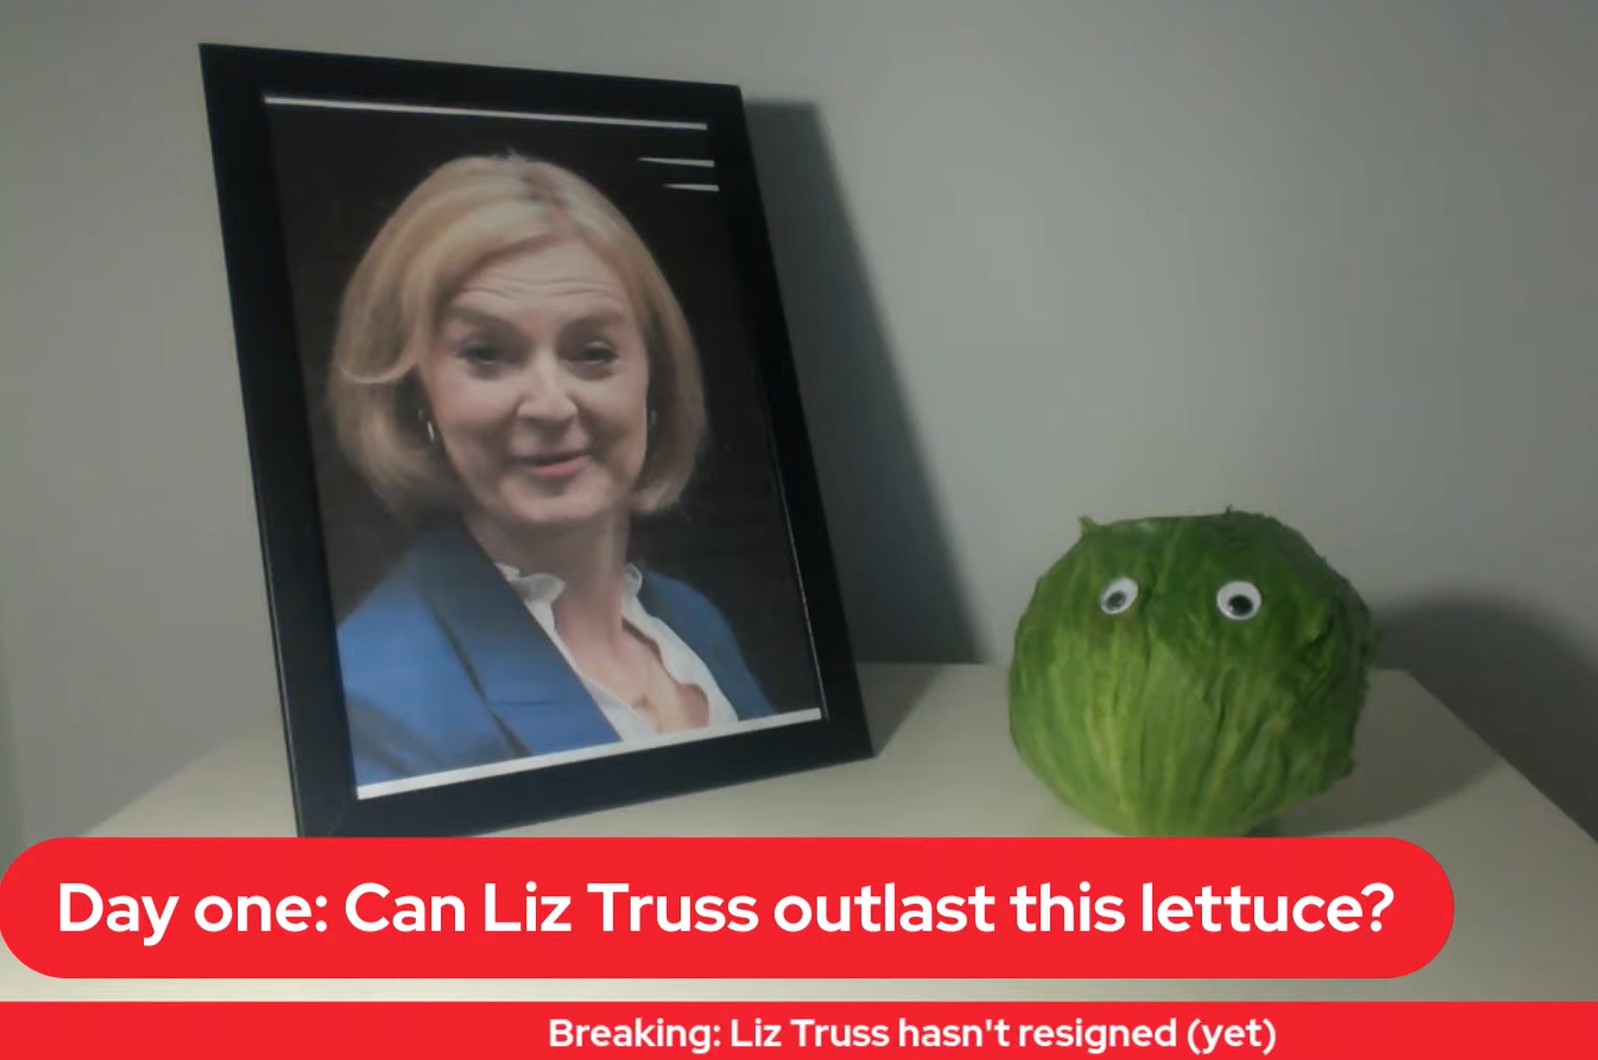 Liz Truss szerint nem volt vicces, hogy egy salátához hasonlították